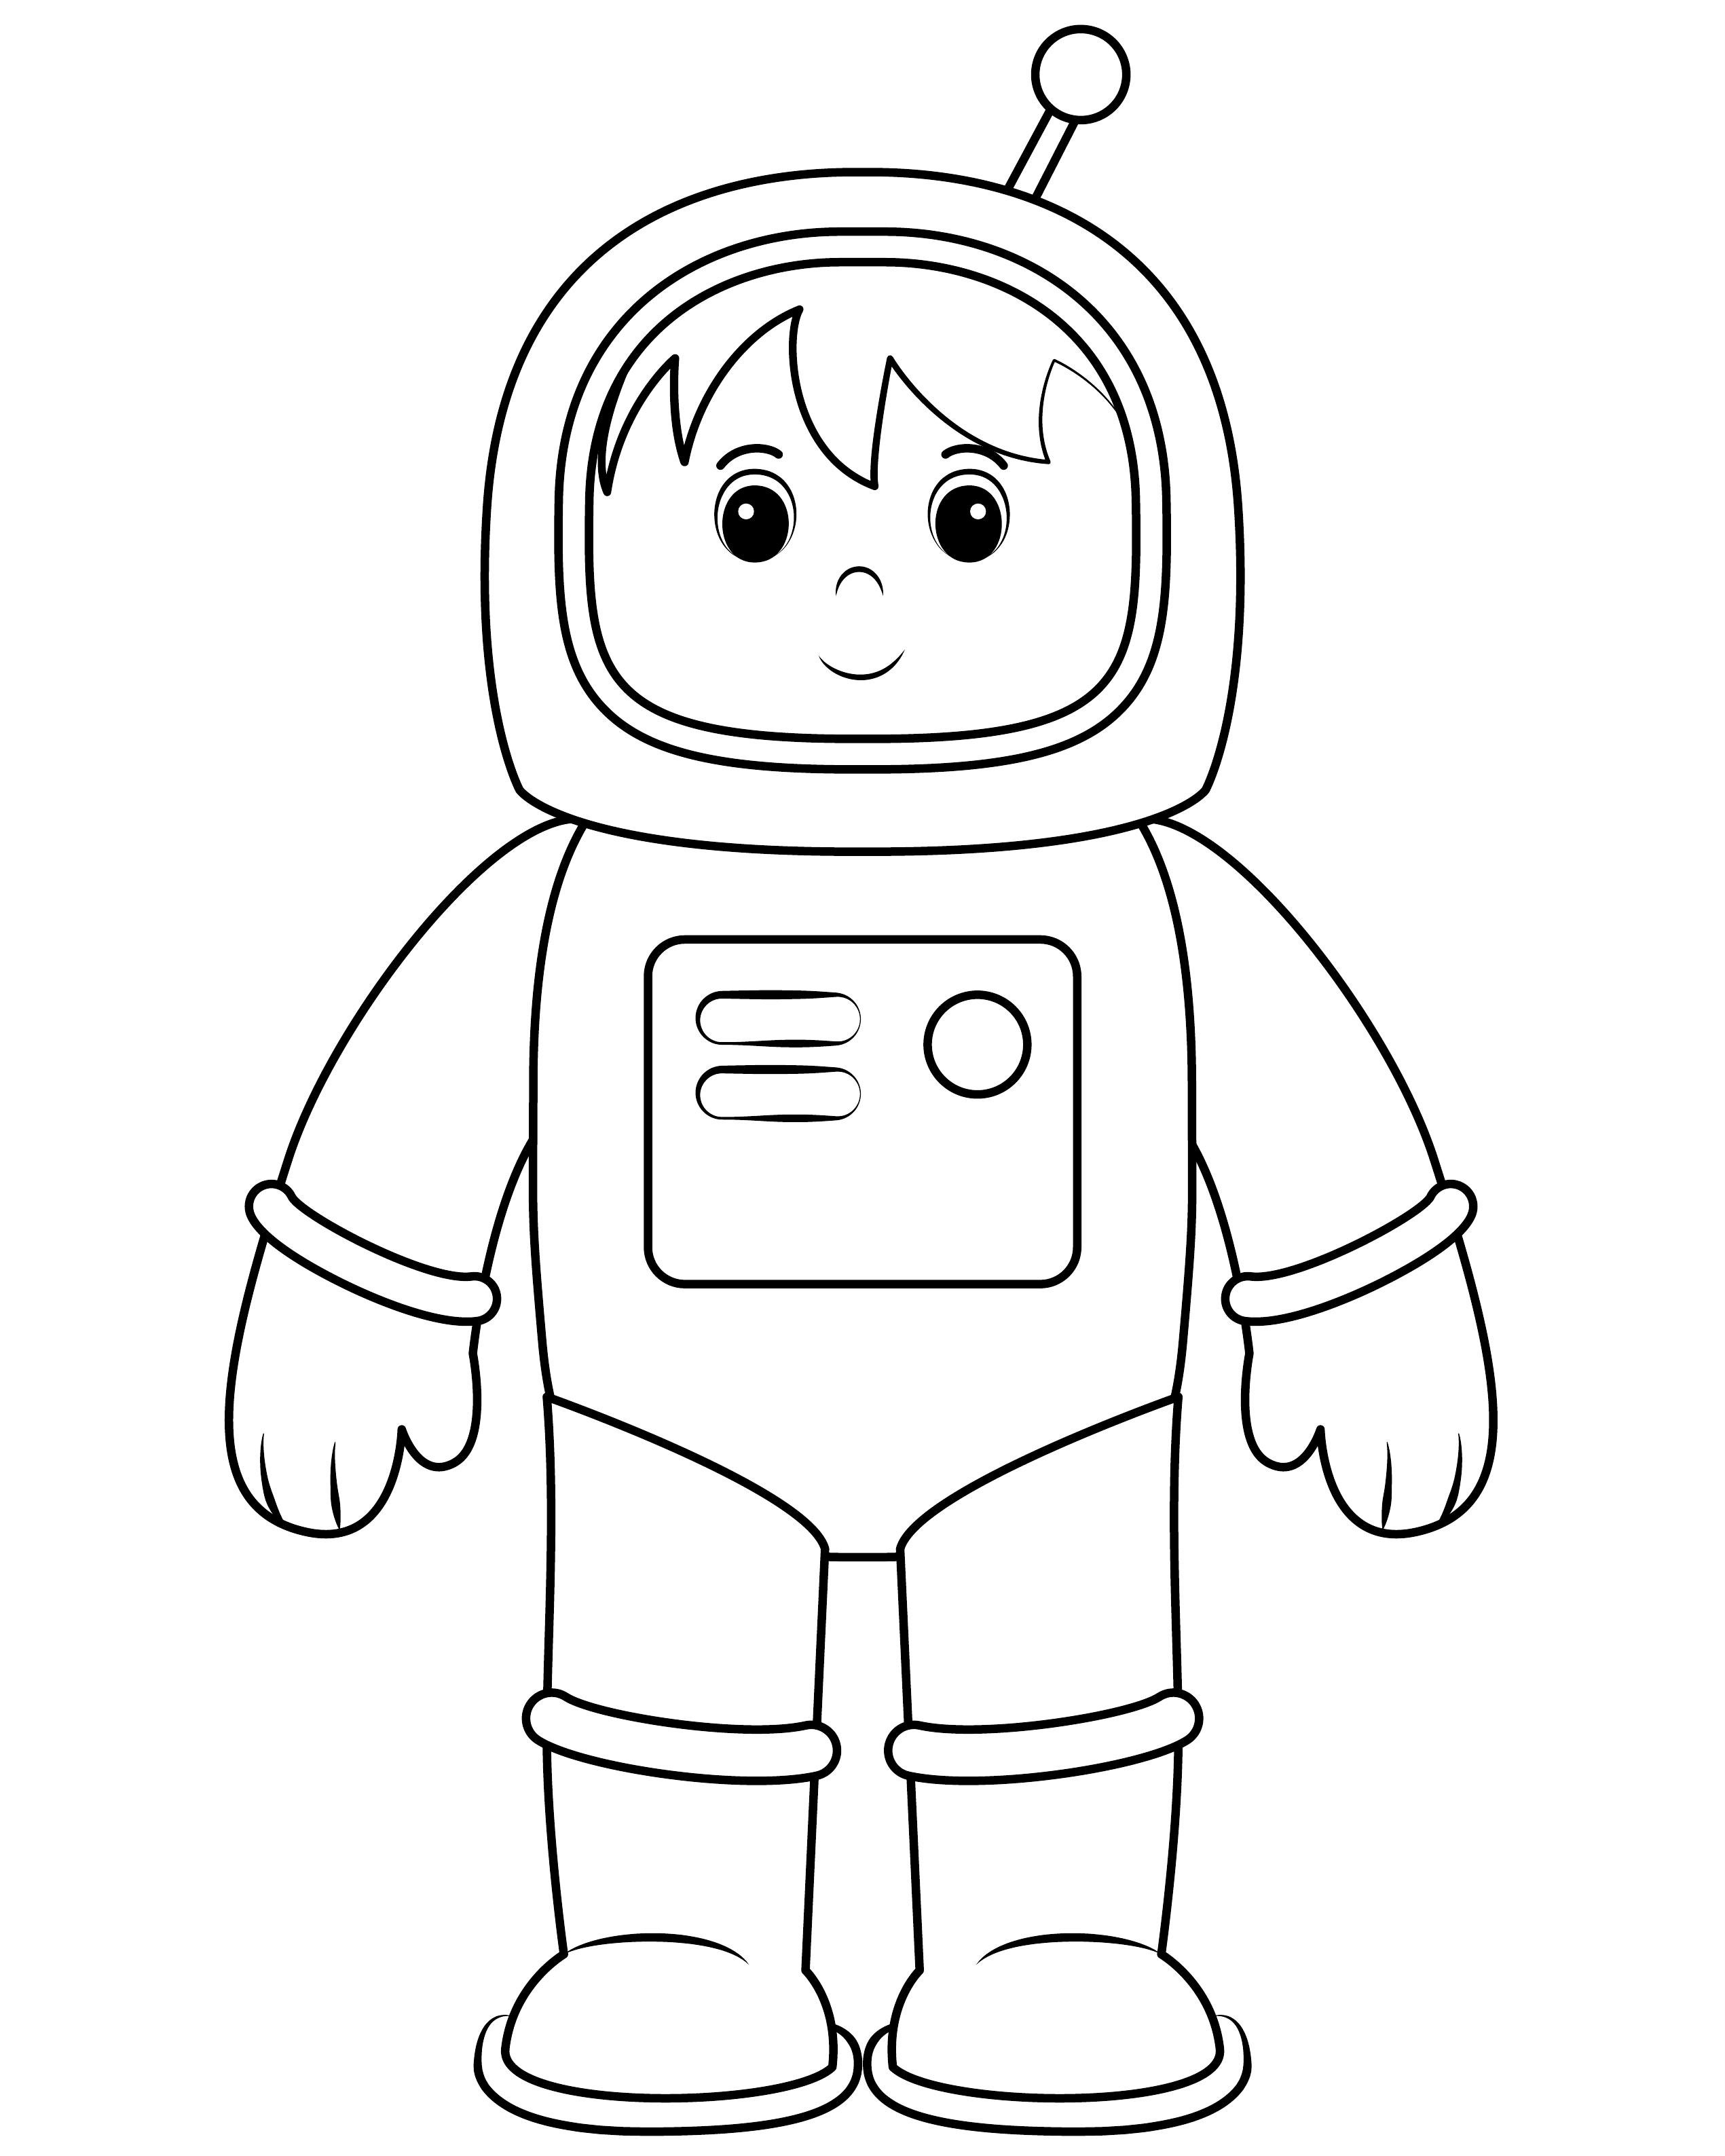 Космонавт шаблон для вырезания распечатать. Космонавт раскраска для детей. Космонавт раскраска для малышей. Космонавт для раскрашивания для детей. Раскраска Космонавта в скафандре для детей.